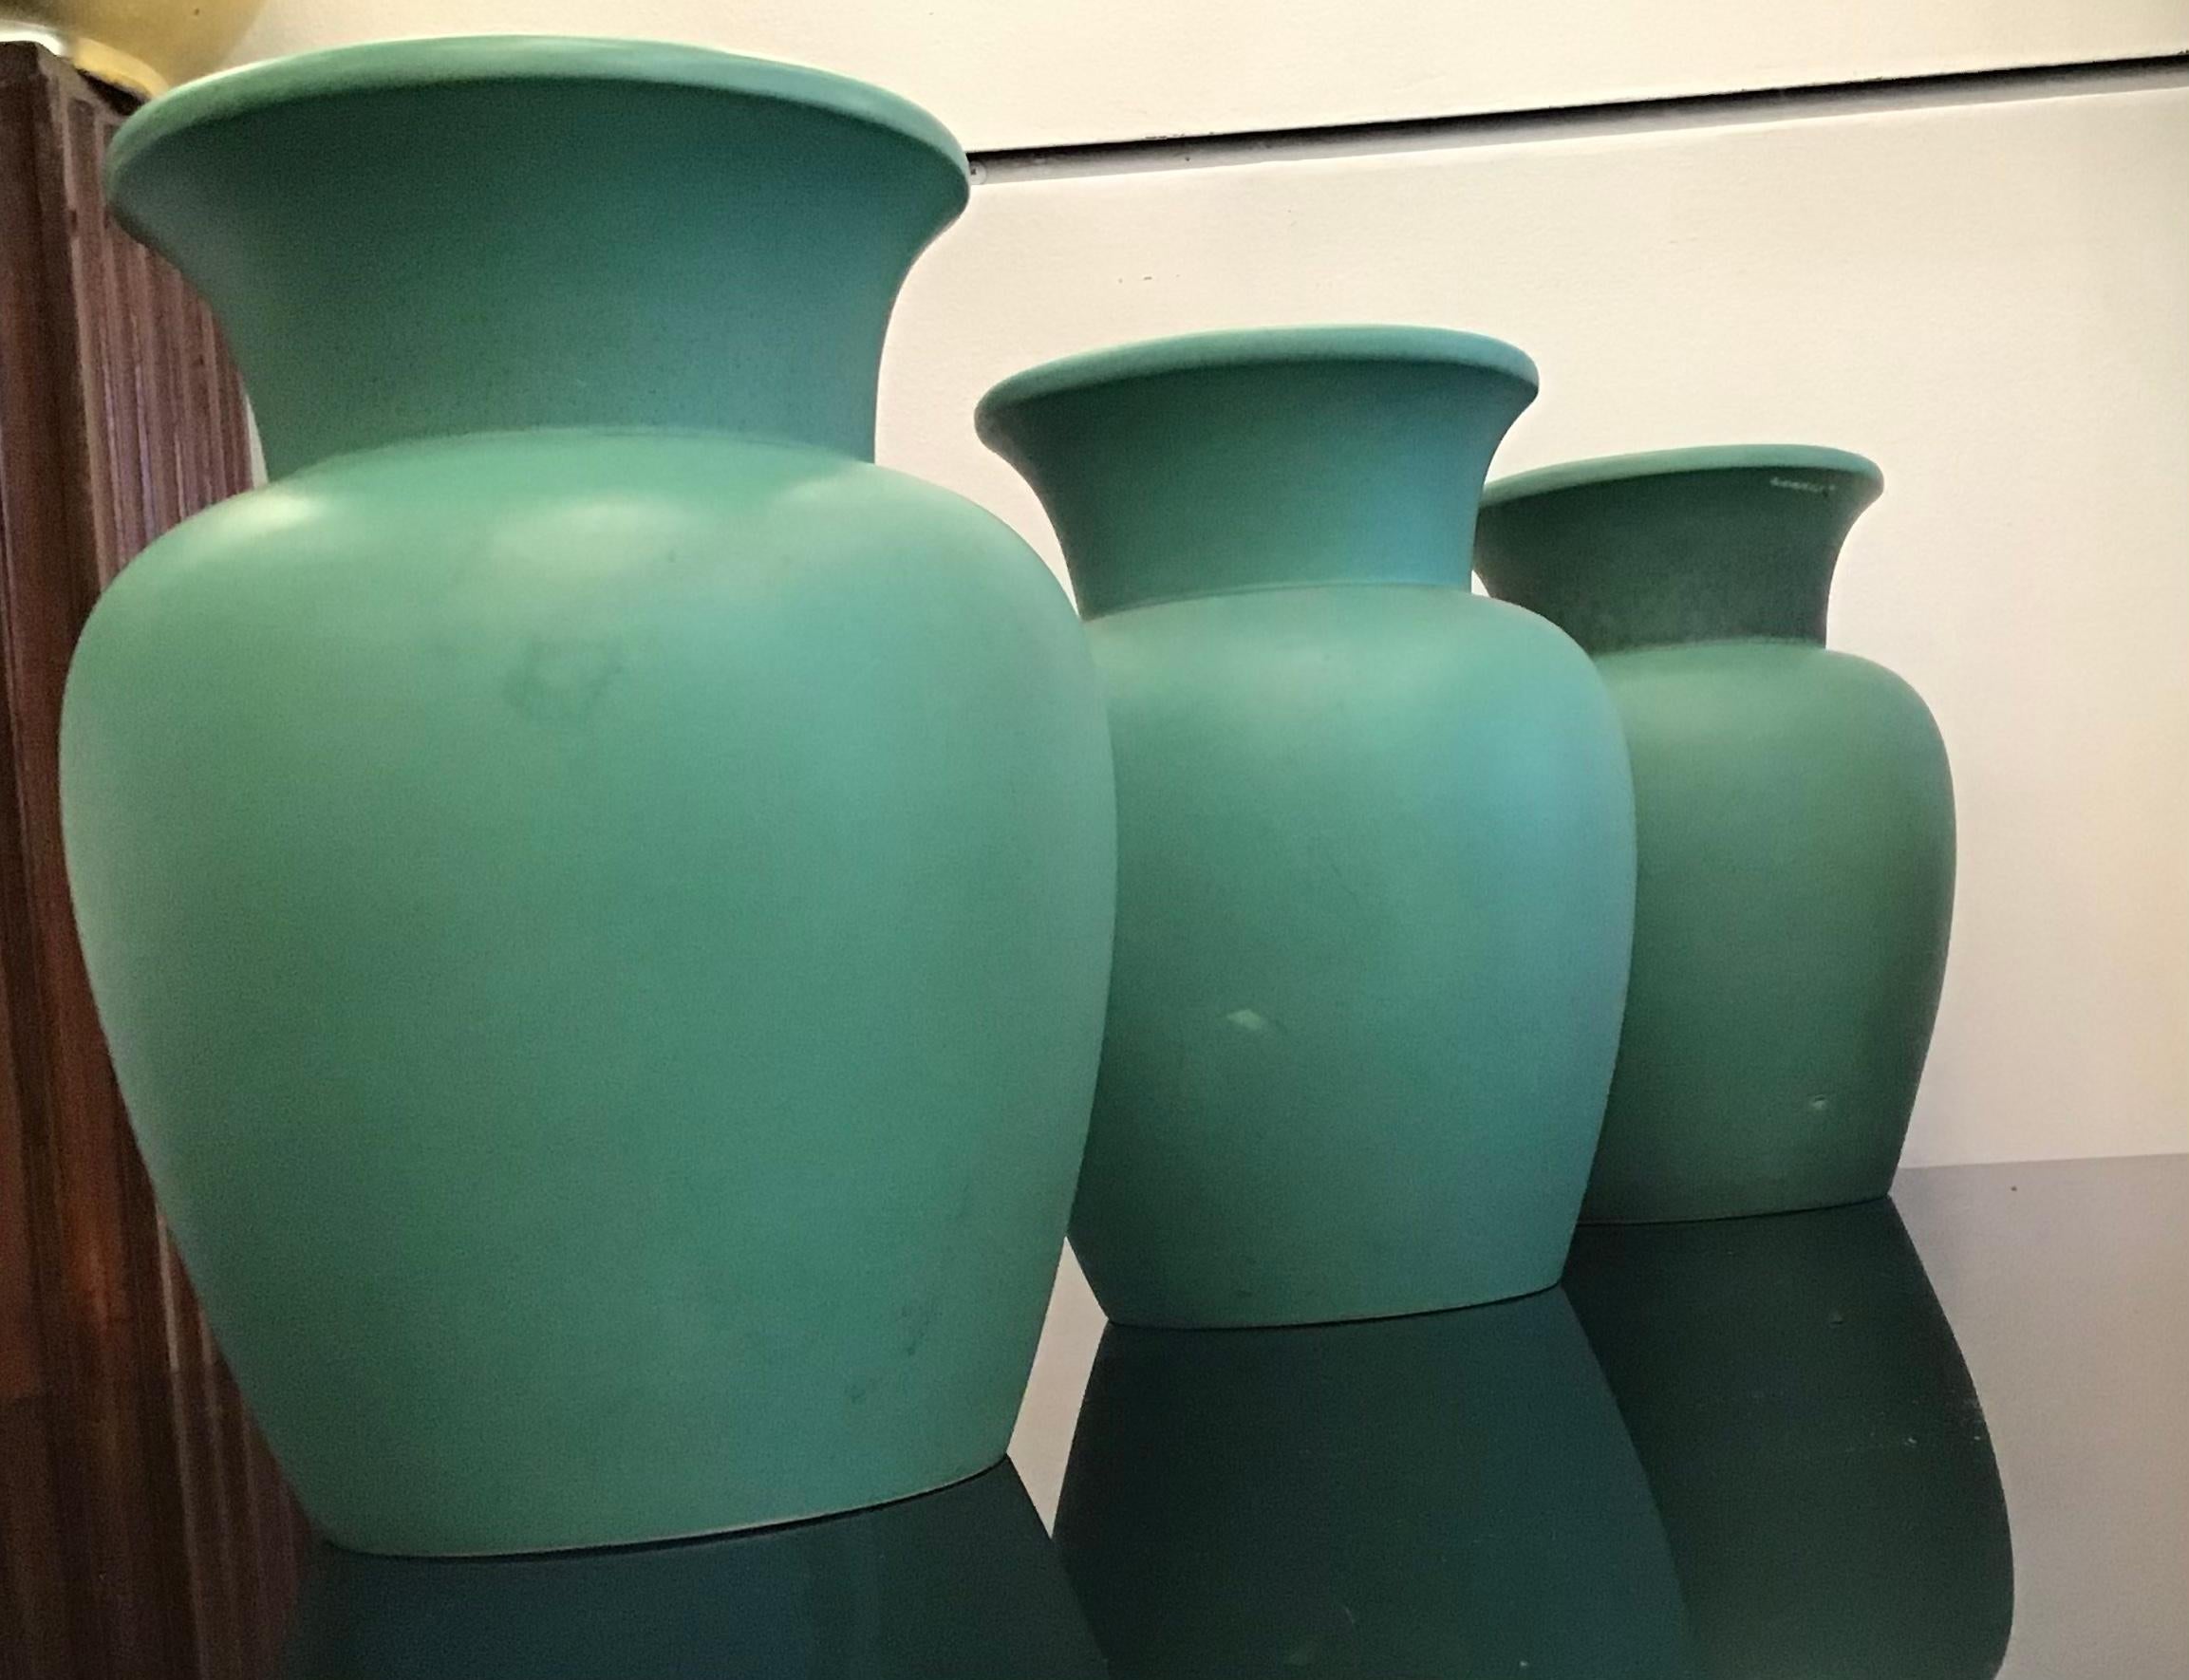 Italian Richard Ginori Giovanni Gariboldi Vase Green Ceramic, 1950, Italy